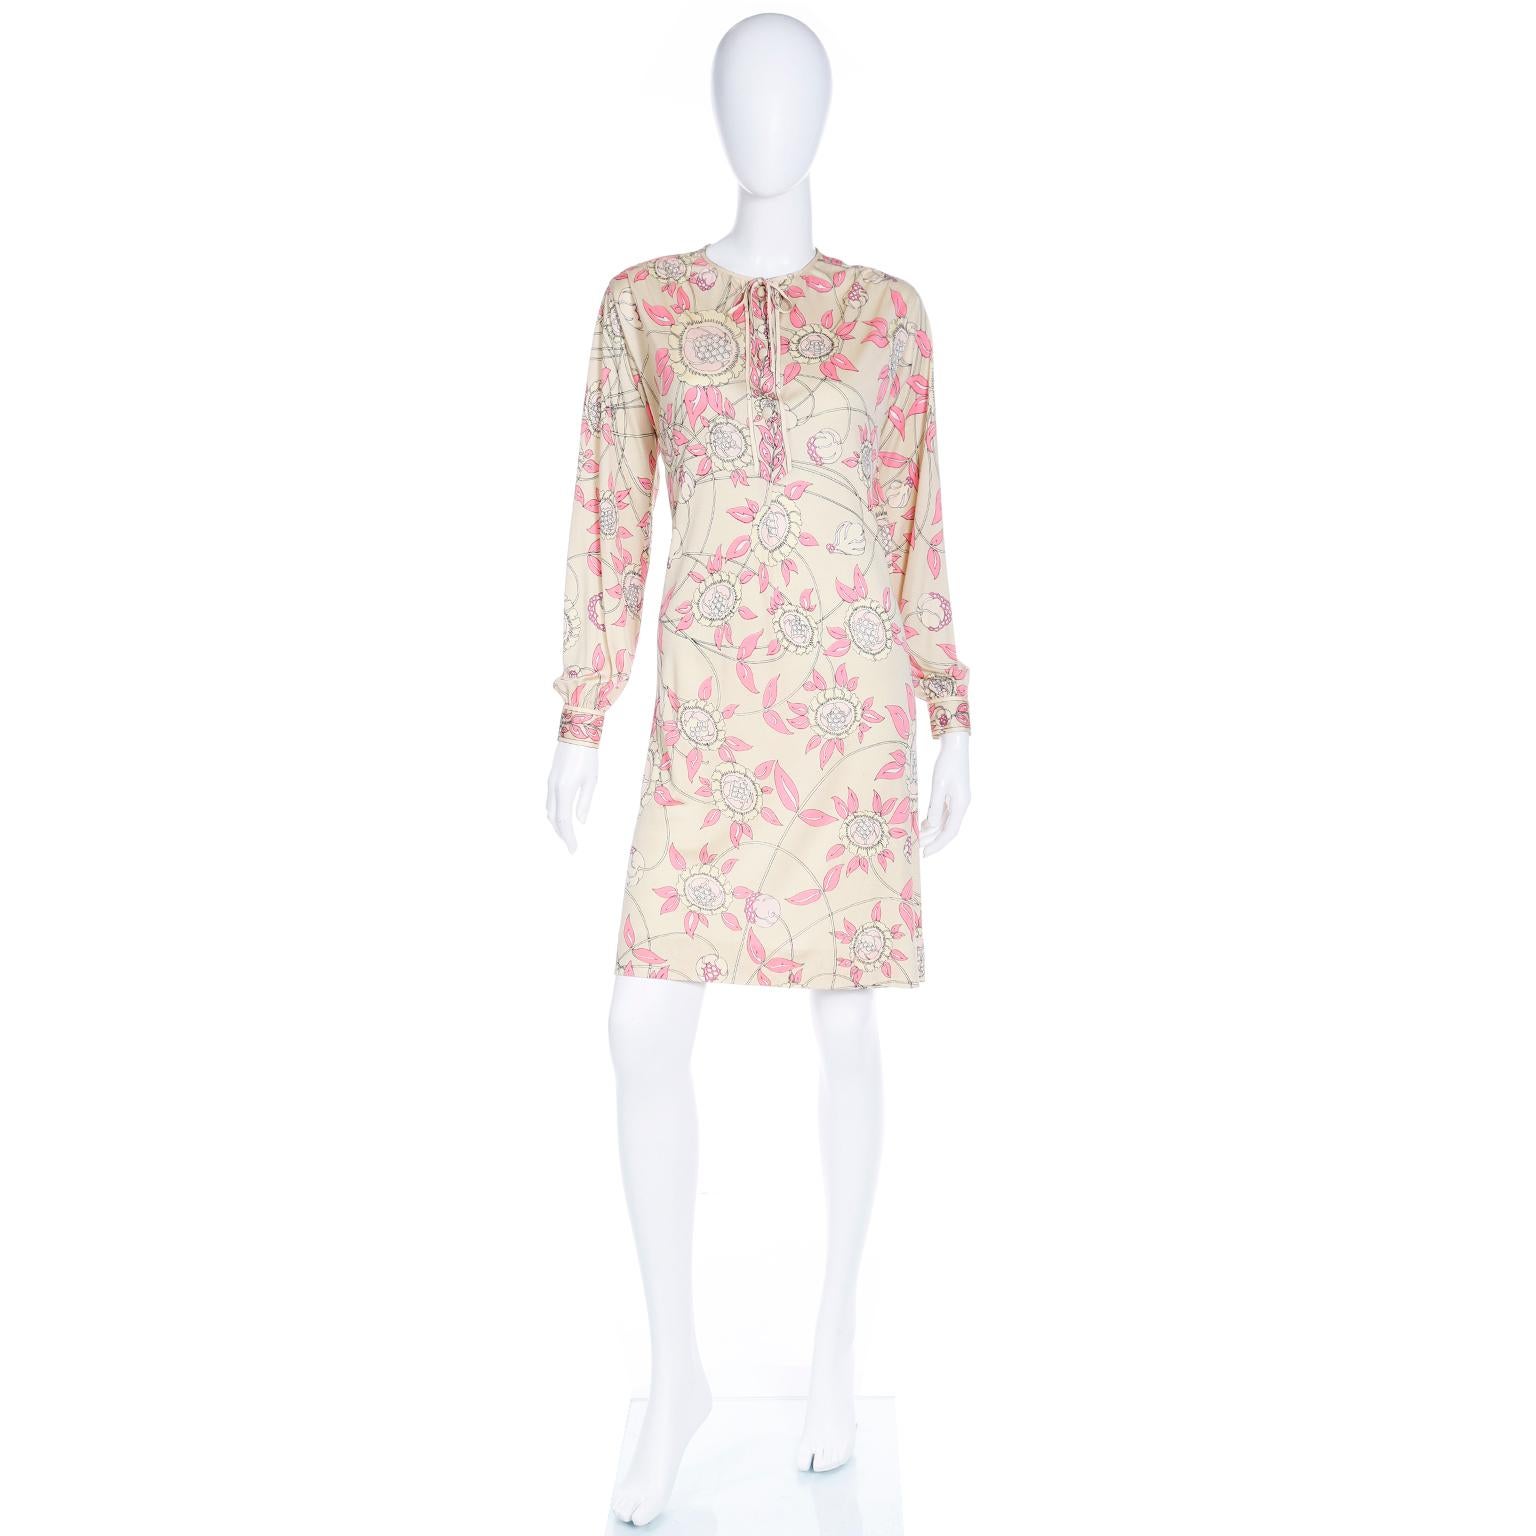 Cette robe Pucci vintage en jersey de soie des années 1970 provient de la succession d'une femme qui a vécu jusqu'à 110 ans. Elle possédait de nombreuses robes Pucci, ainsi que d'autres pièces de créateurs italiens.  L'imprimé est d'un jaune doux et